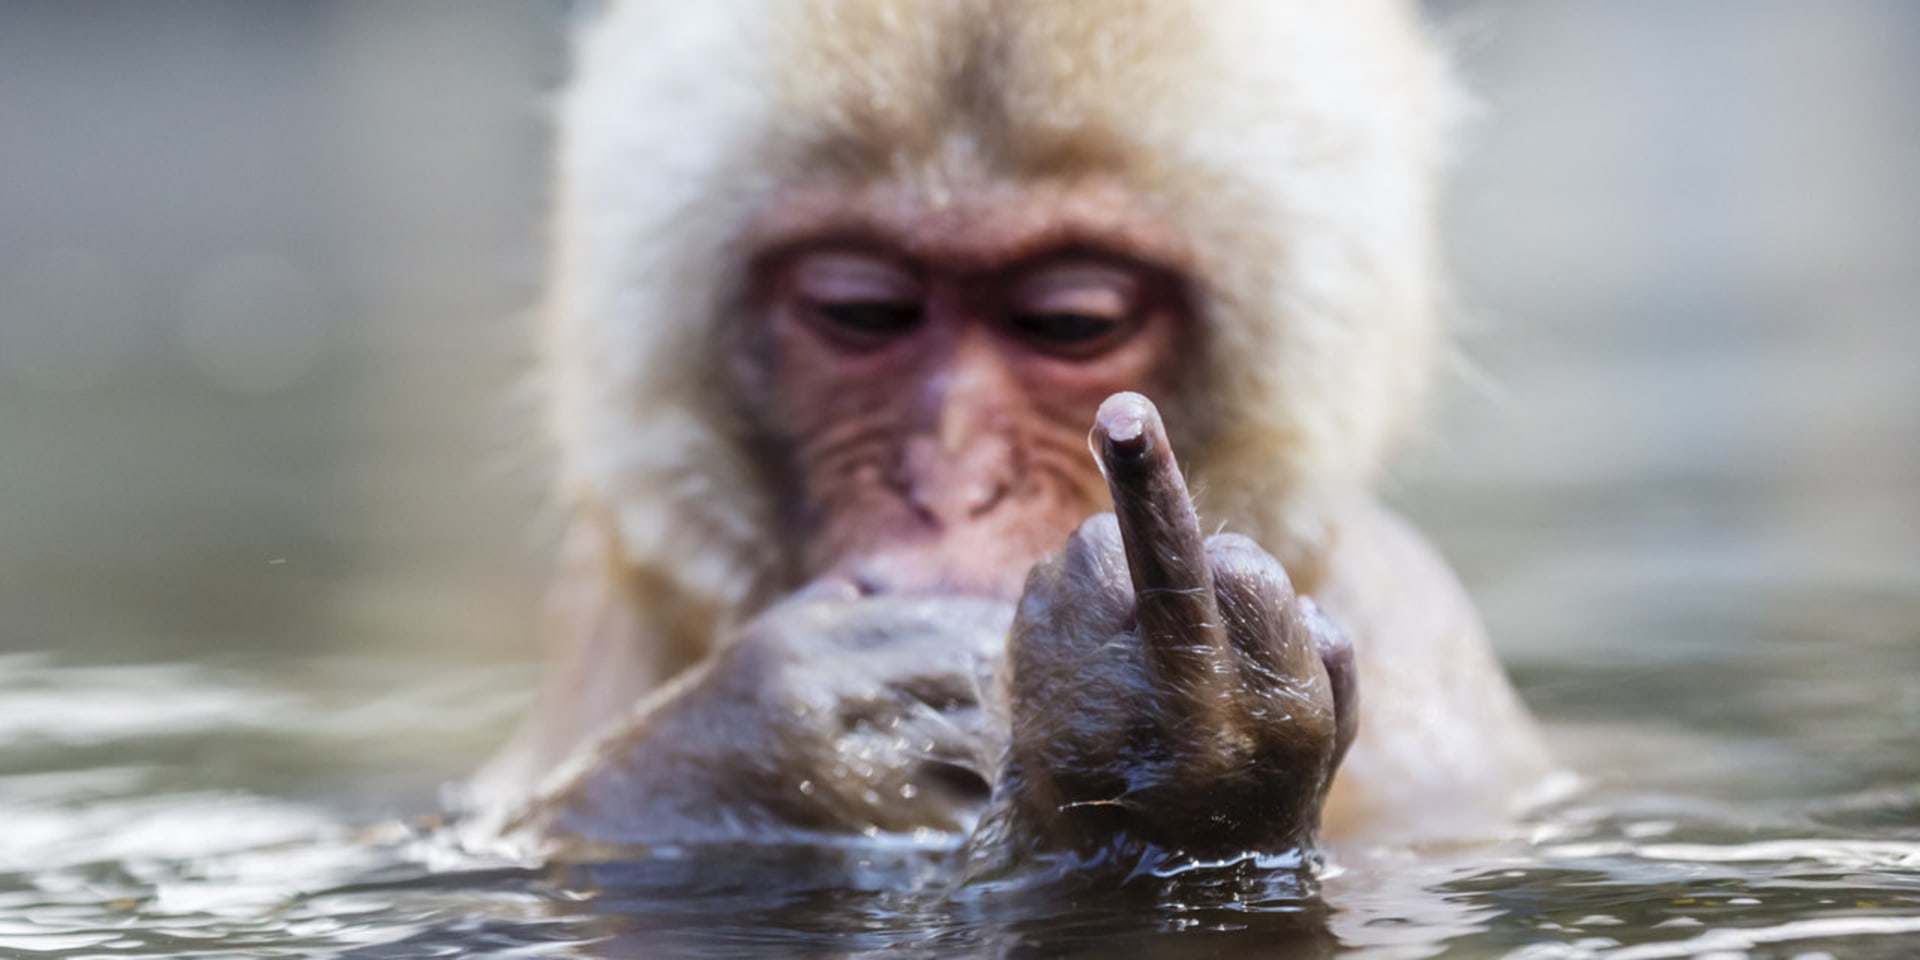 Neslušné gesto v provedení makaka